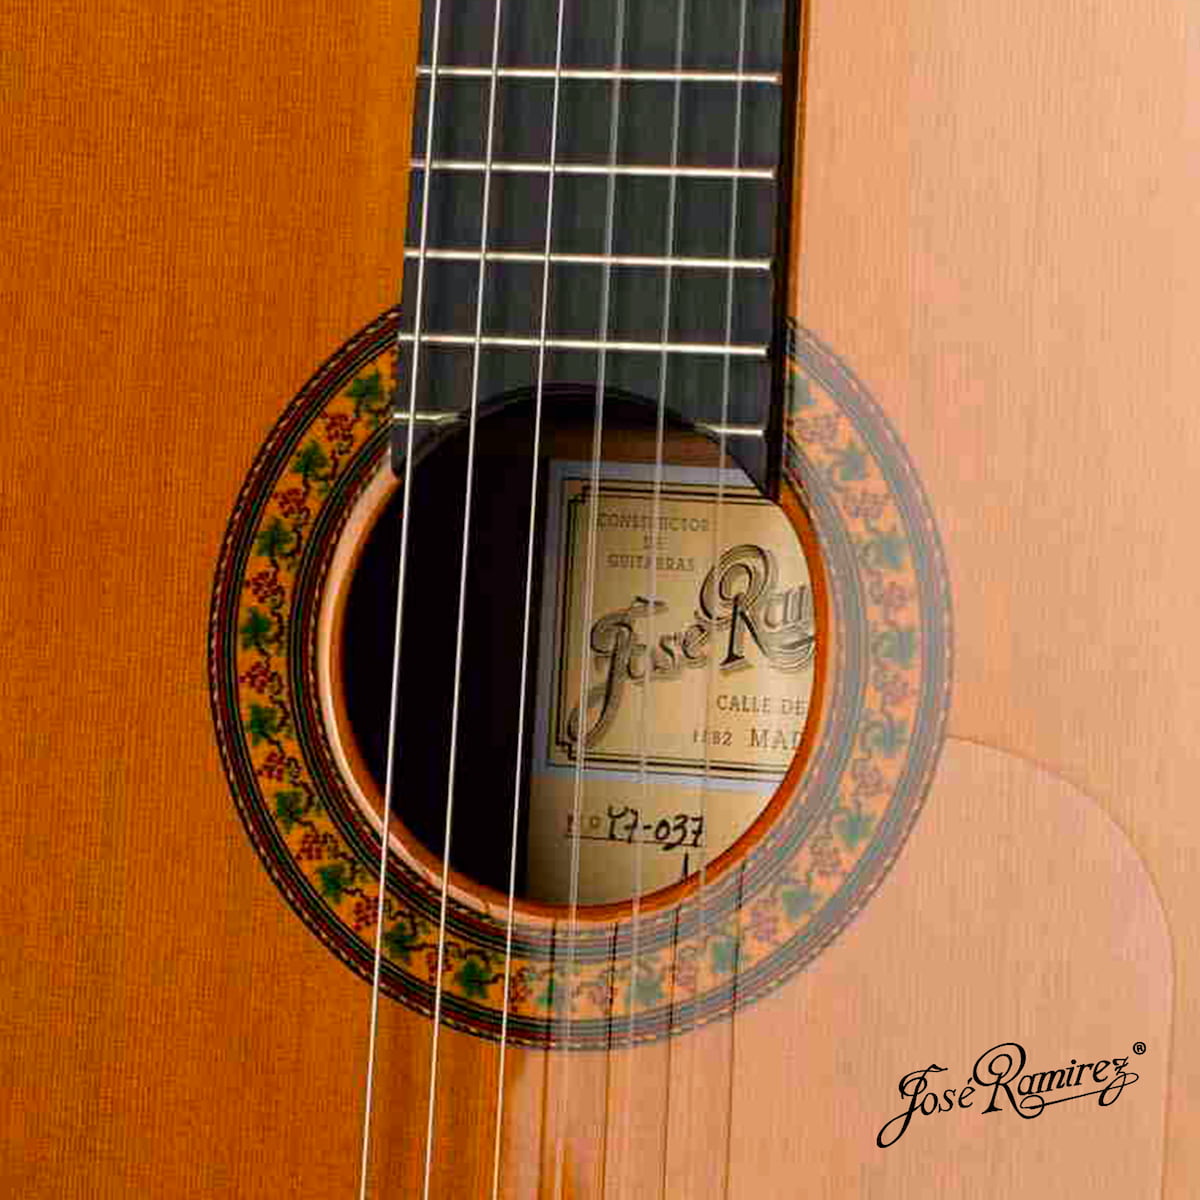 Boca de la guitarra Tradicional Serranito